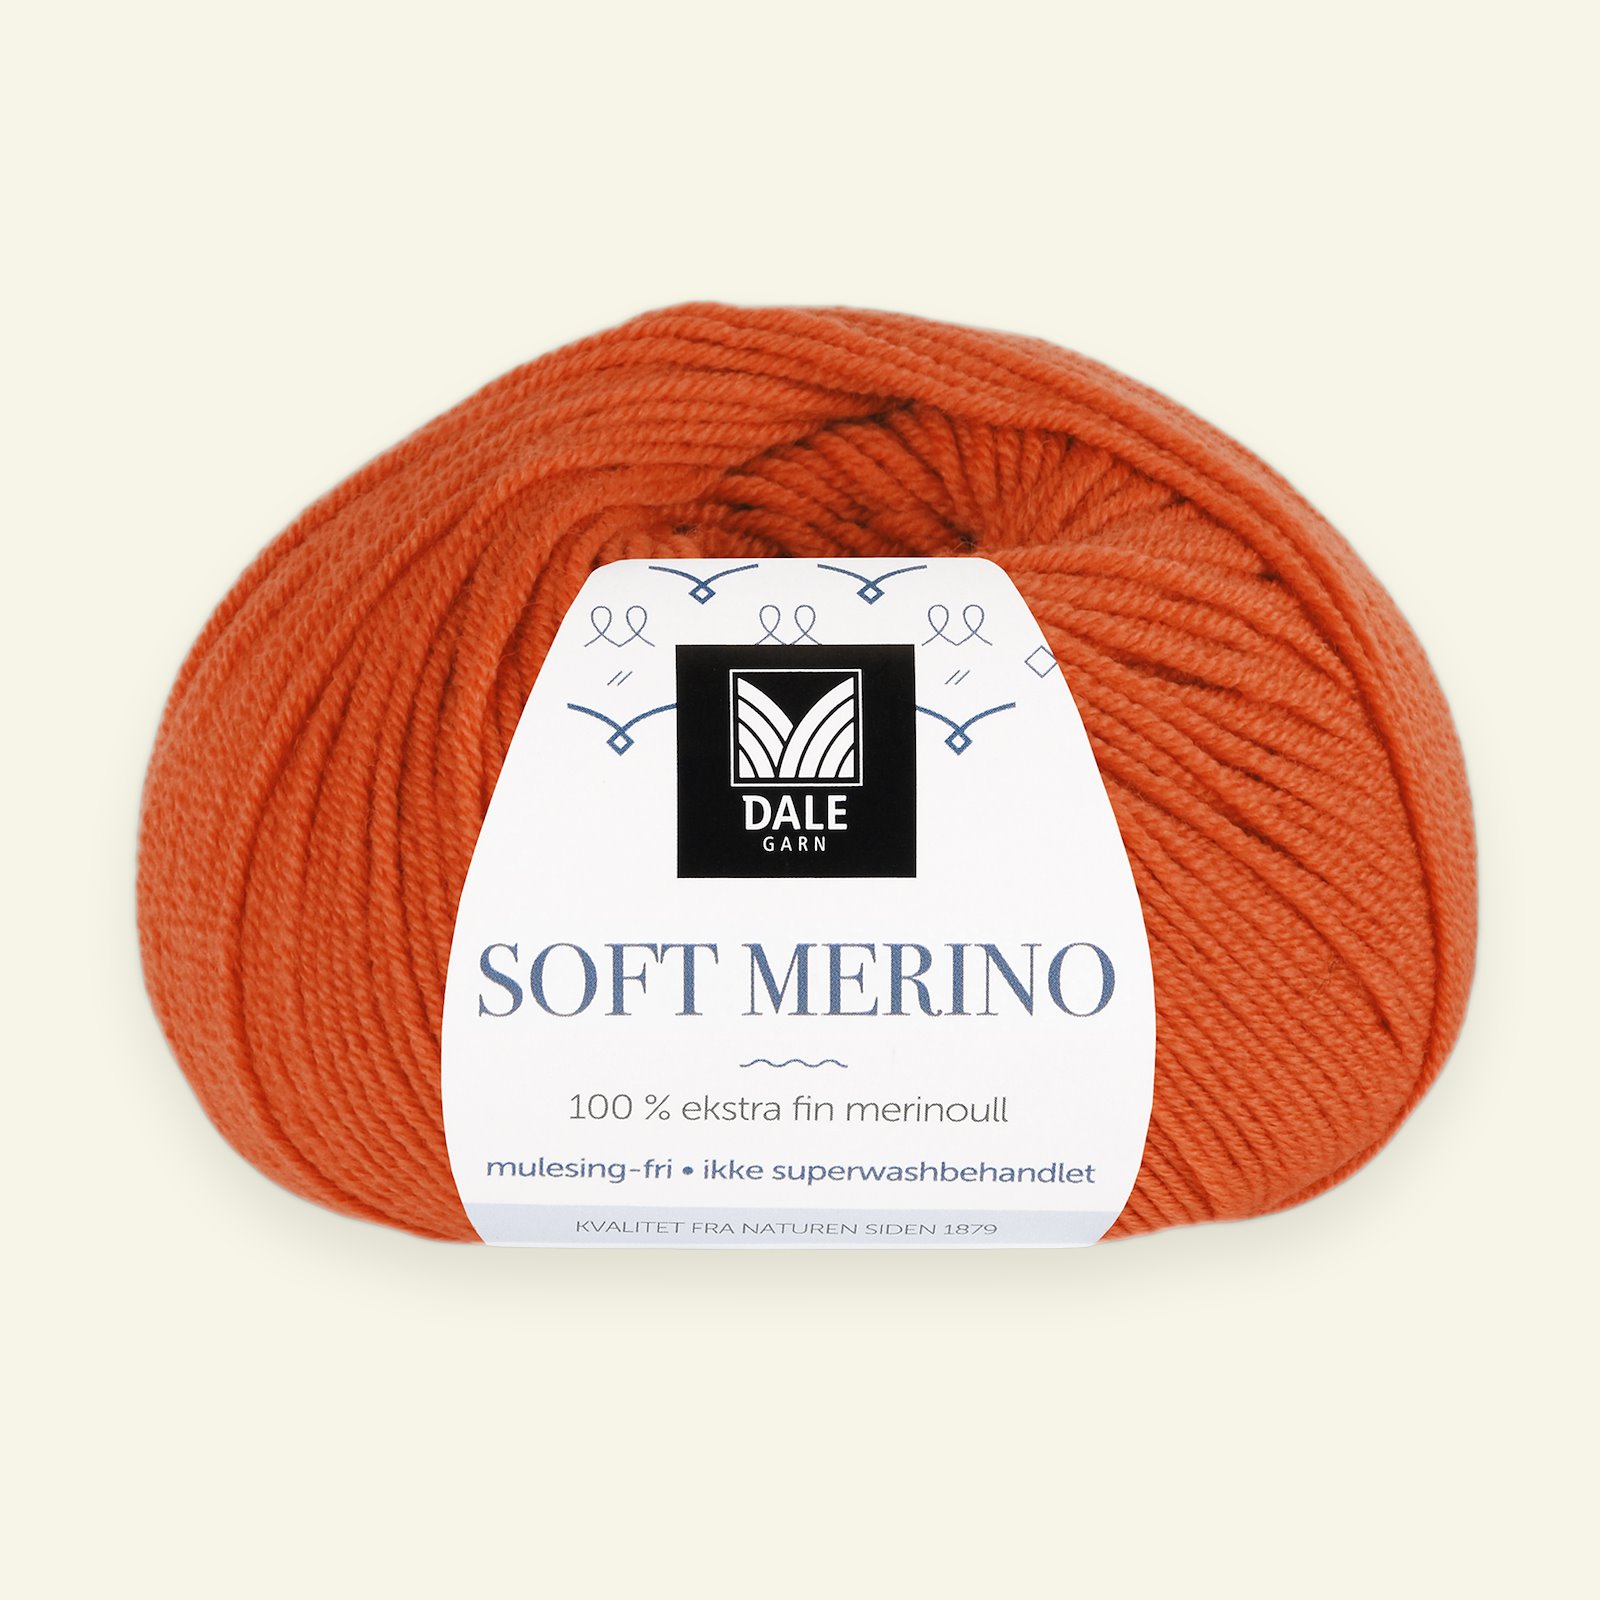 Dale Garn, 100% extra fint merinogarn "Soft Merino", orange (3033) 90000354_pack